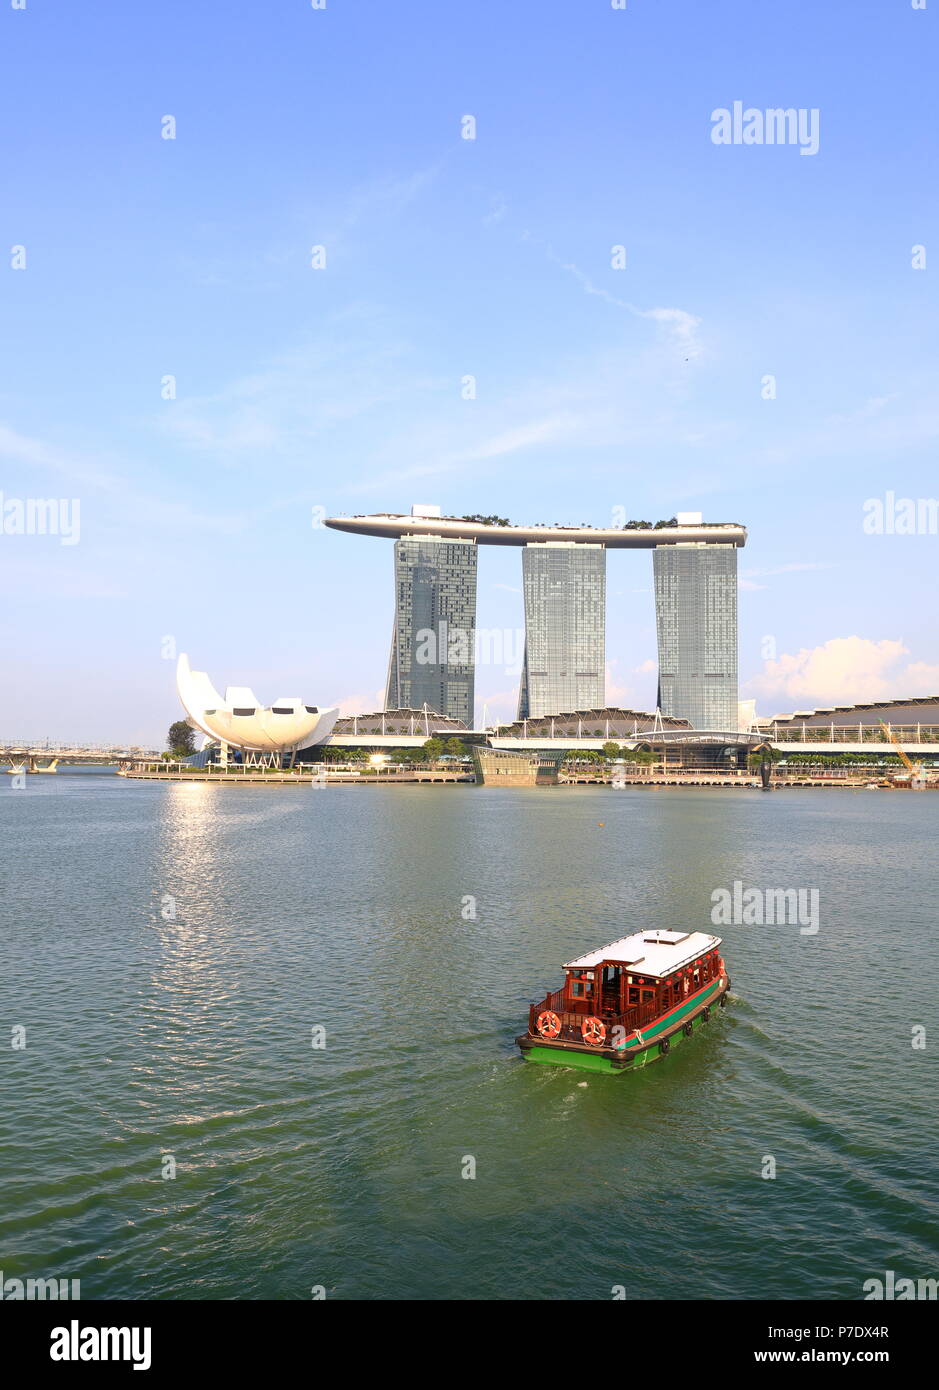 Singapore city skyline avec Singapore River Cruise, Marina Bay Sands, Sciences de l'Art Musium vue depuis le pont de l'Esplanade Banque D'Images